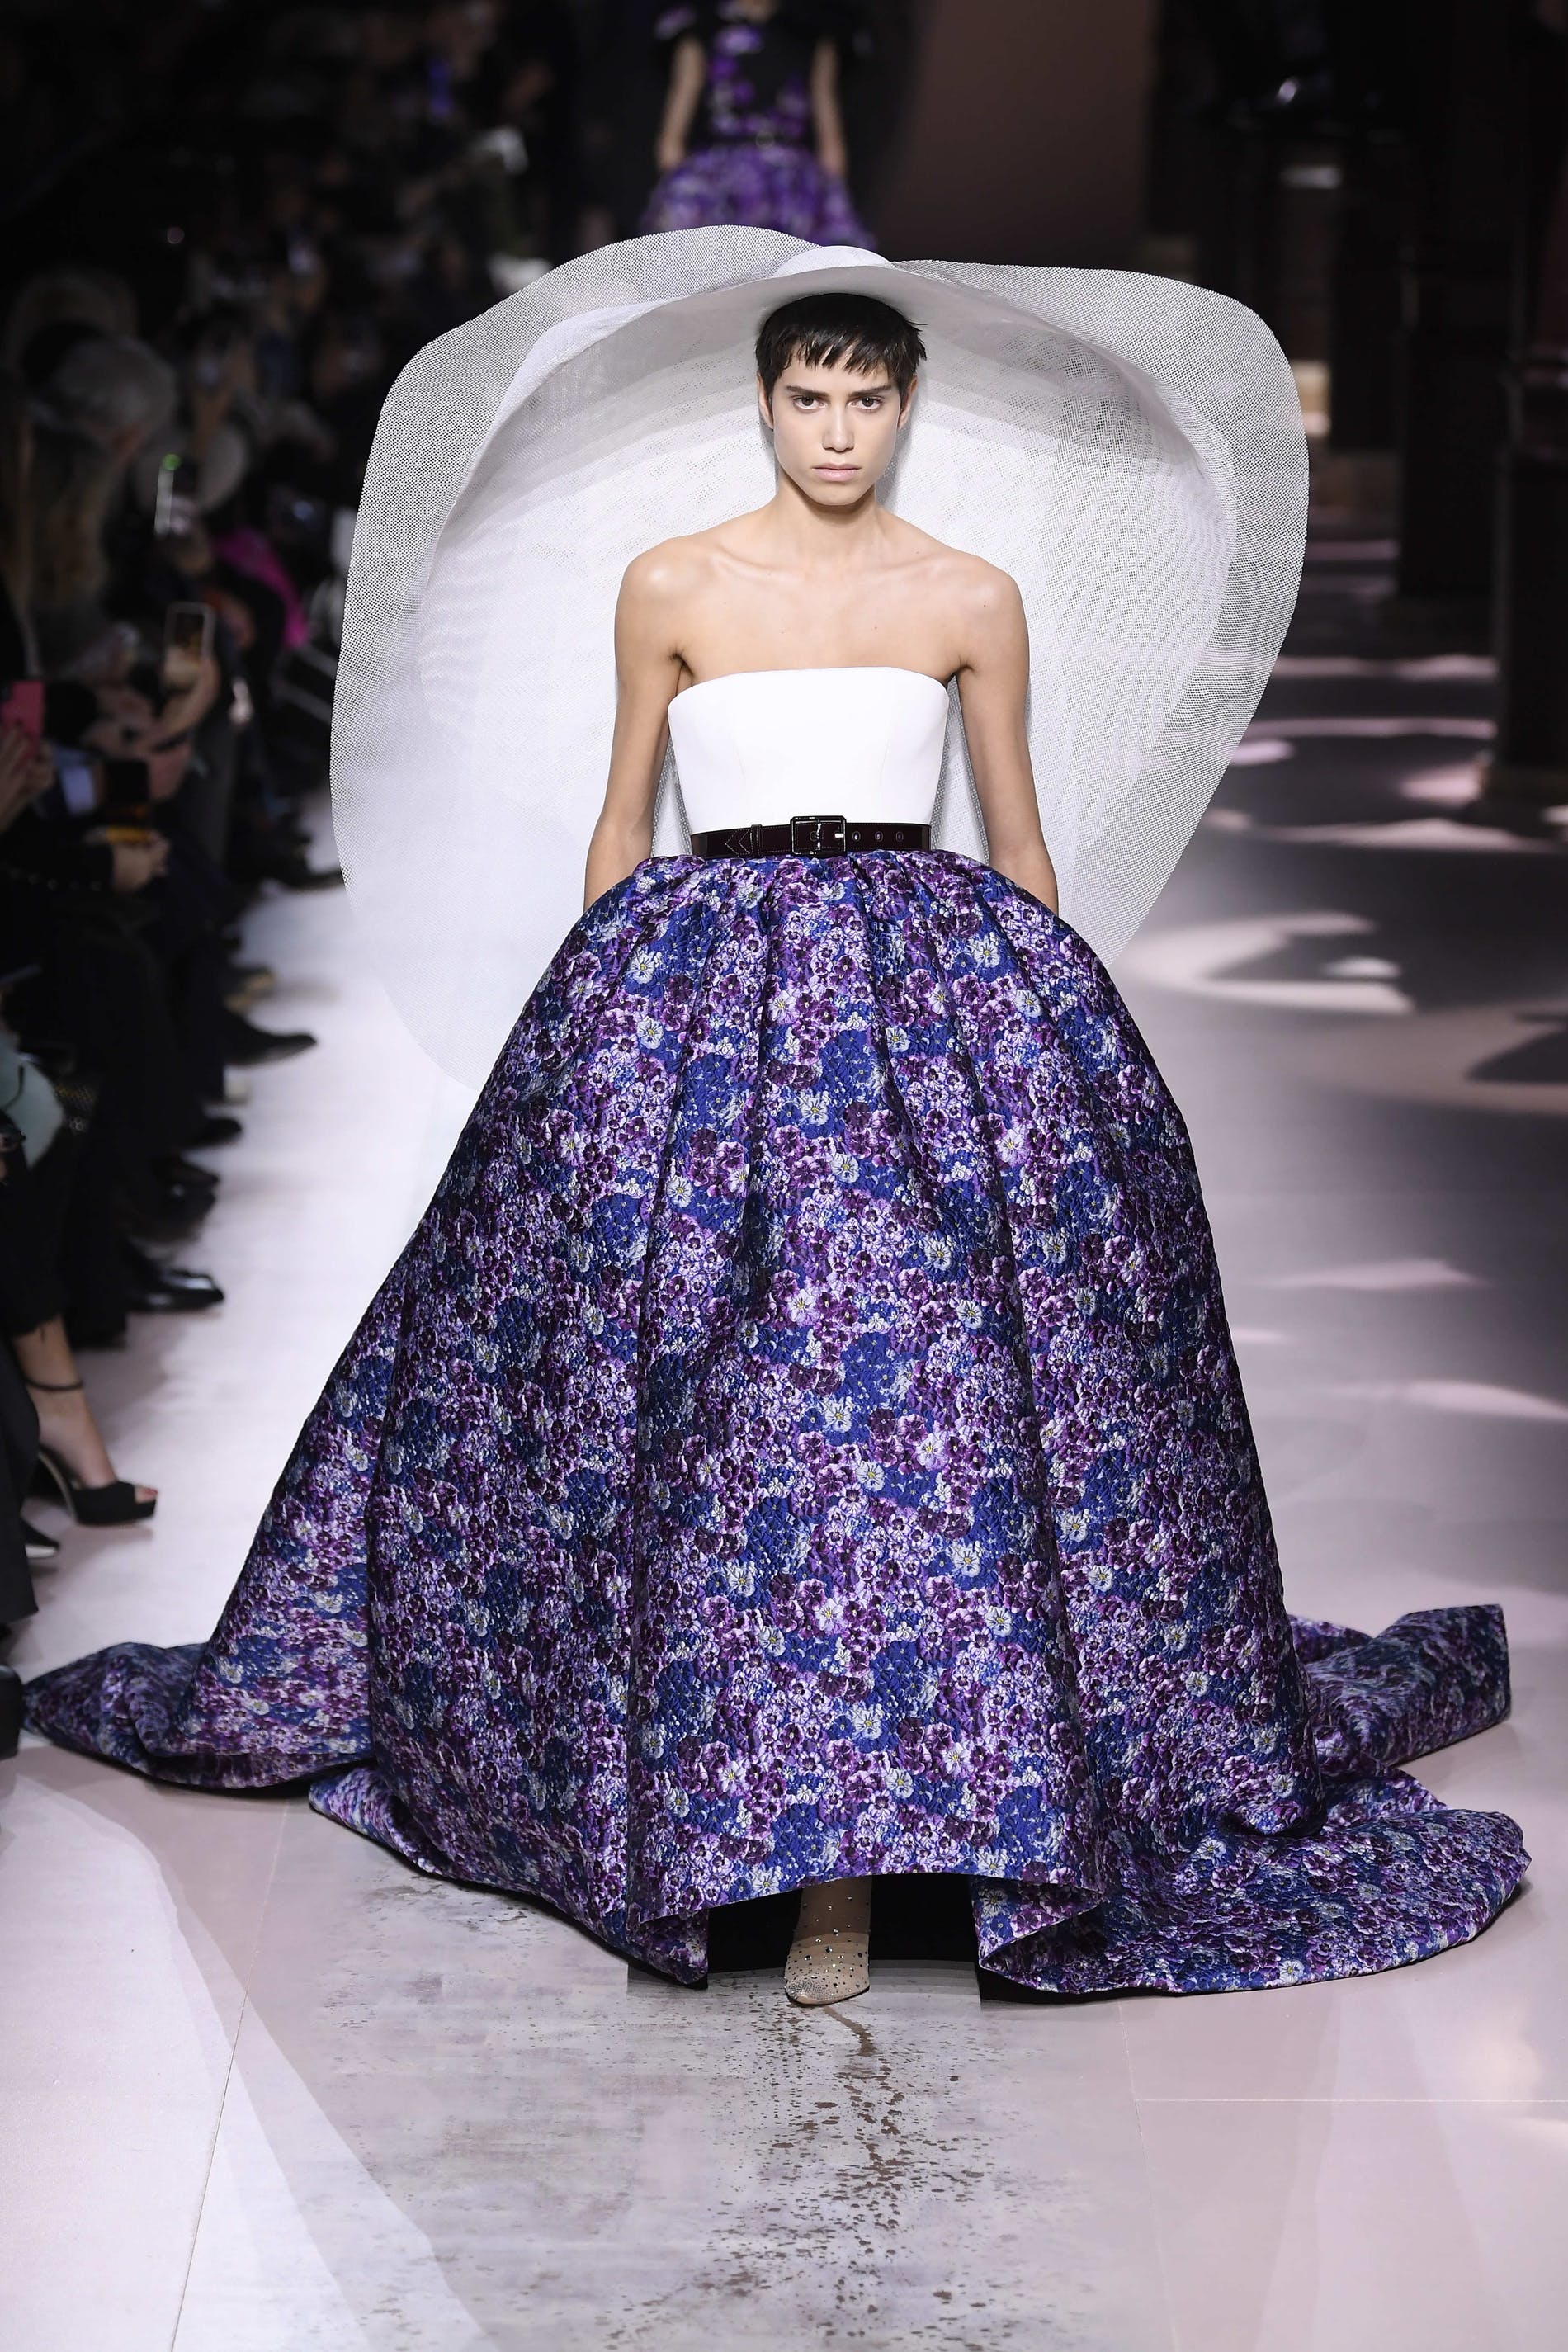 Givenchy alla haute couture Parigi - FashionrunwaysFashionrunways